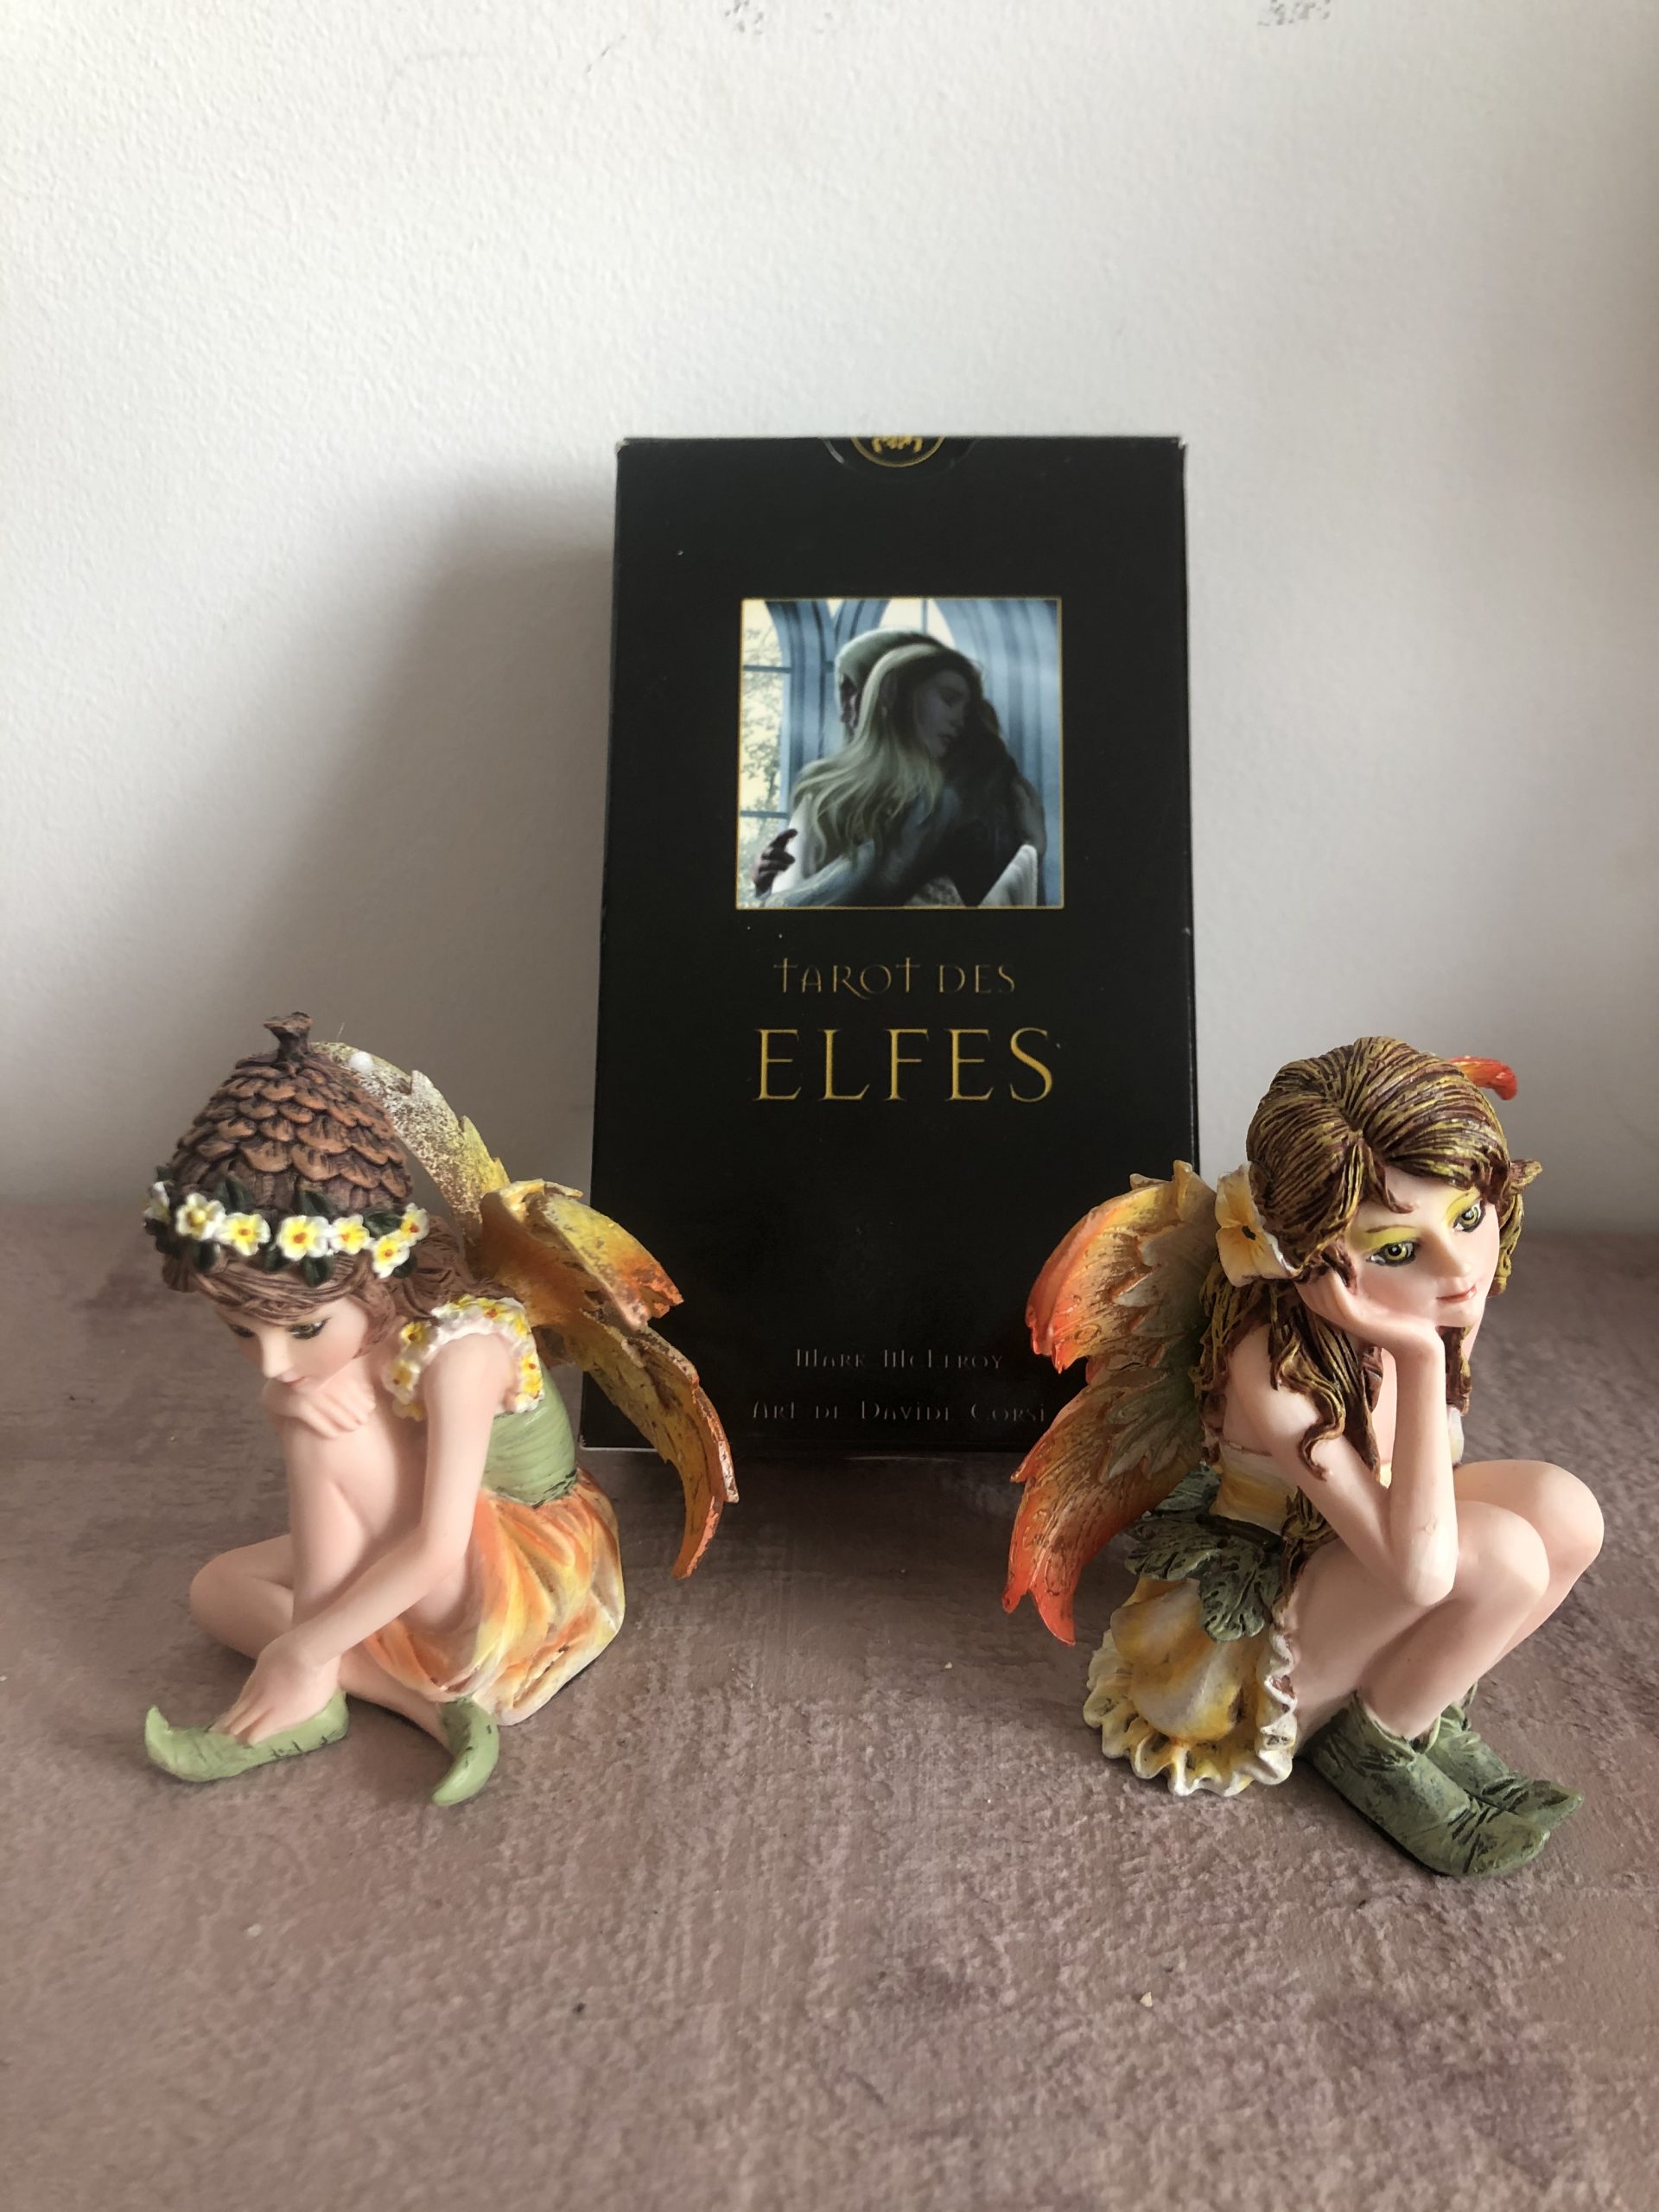 Librairie ésotérique pierres des elfes - Le tarot divinatoire